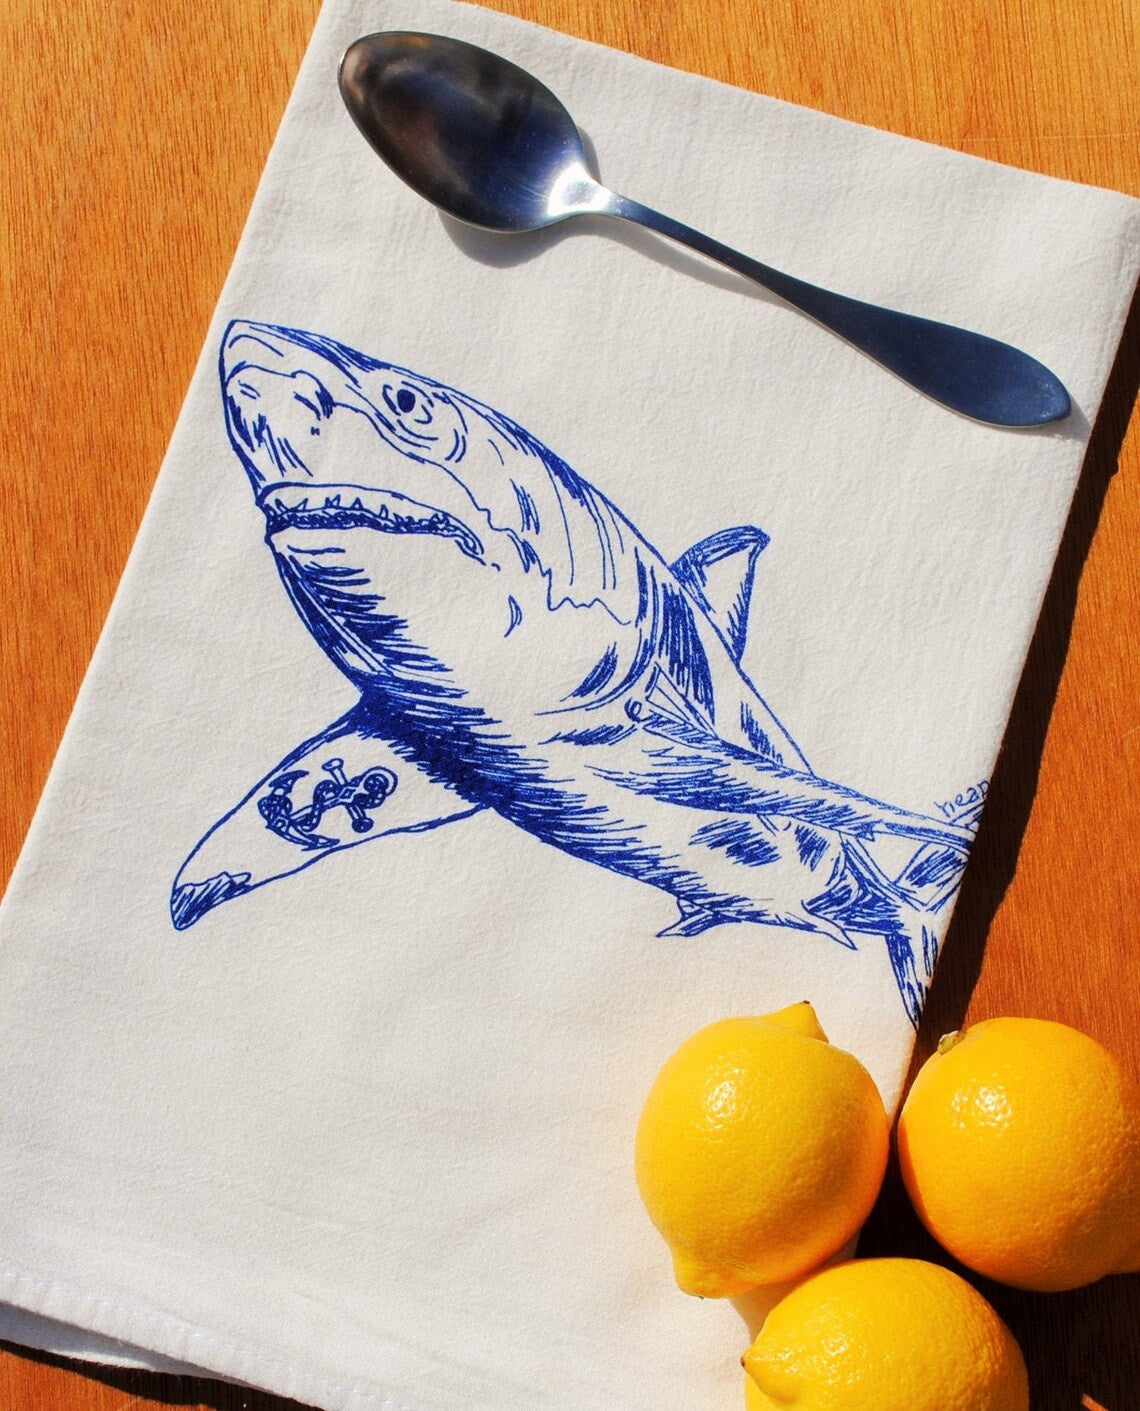 Shark with an Anchor Tattoo Flour Sack Tea Towel